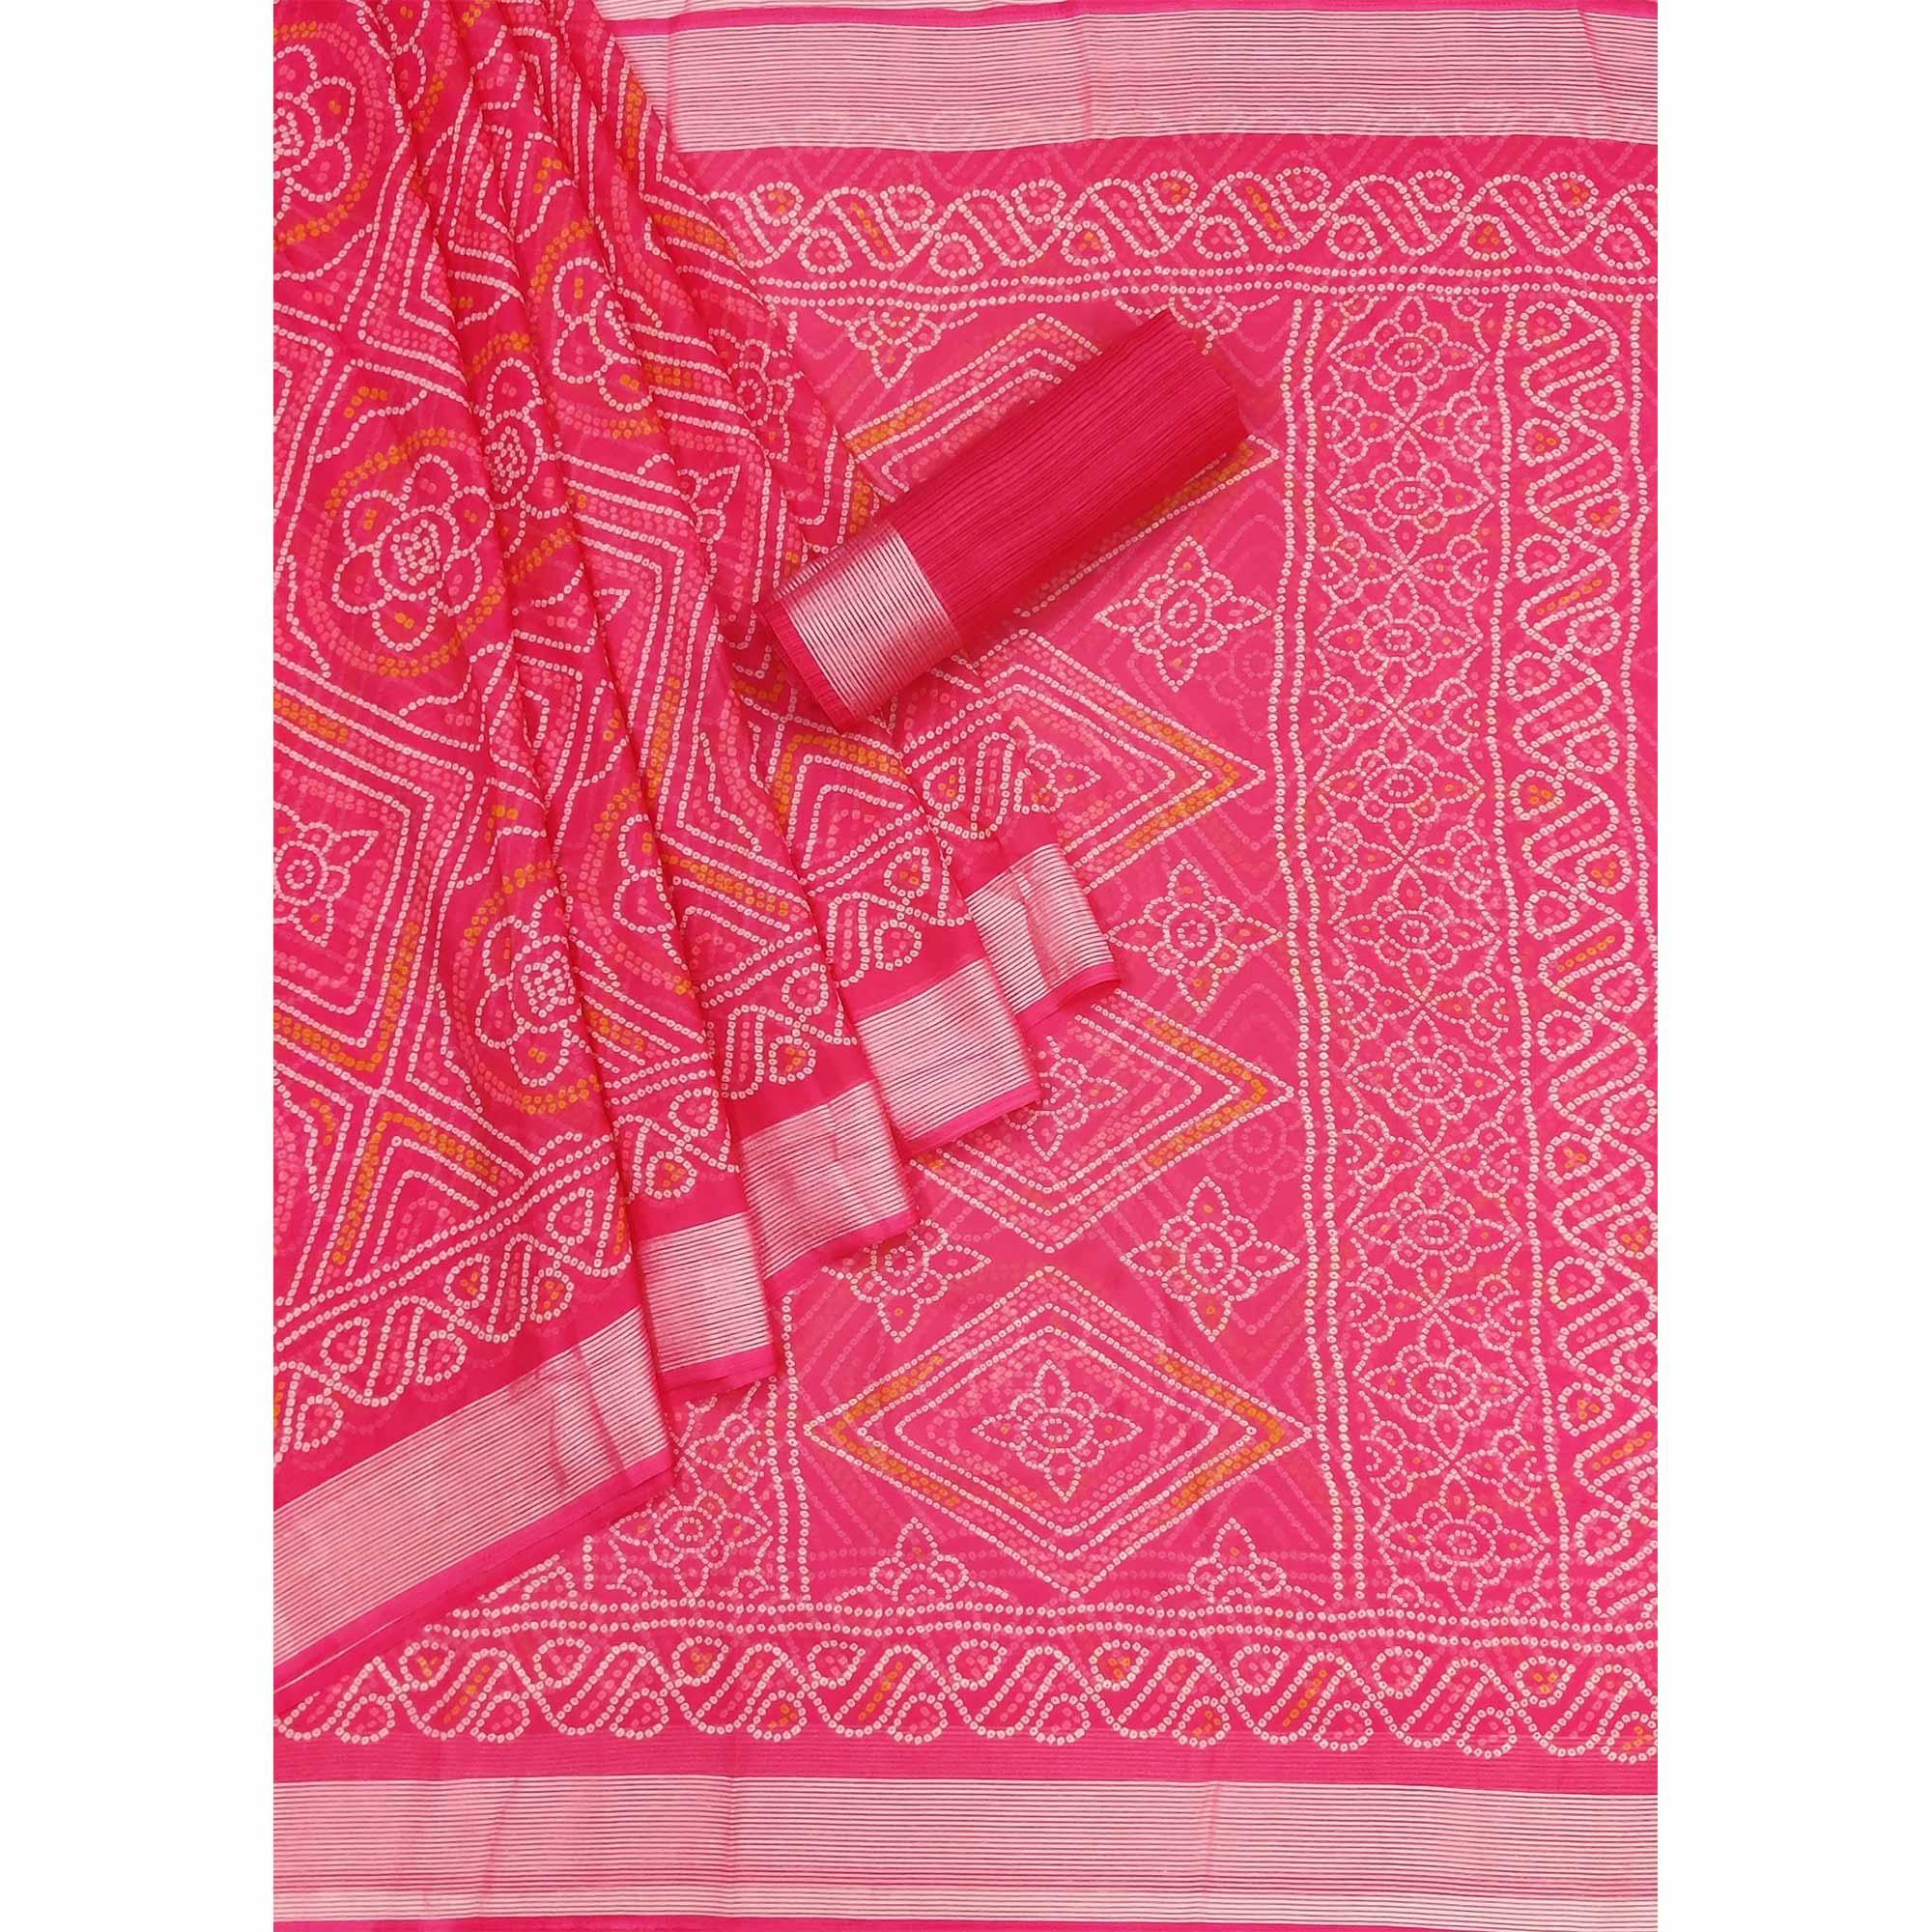 Rani Pink Casual Wear Bandhani Printed Chiffon Saree - Peachmode